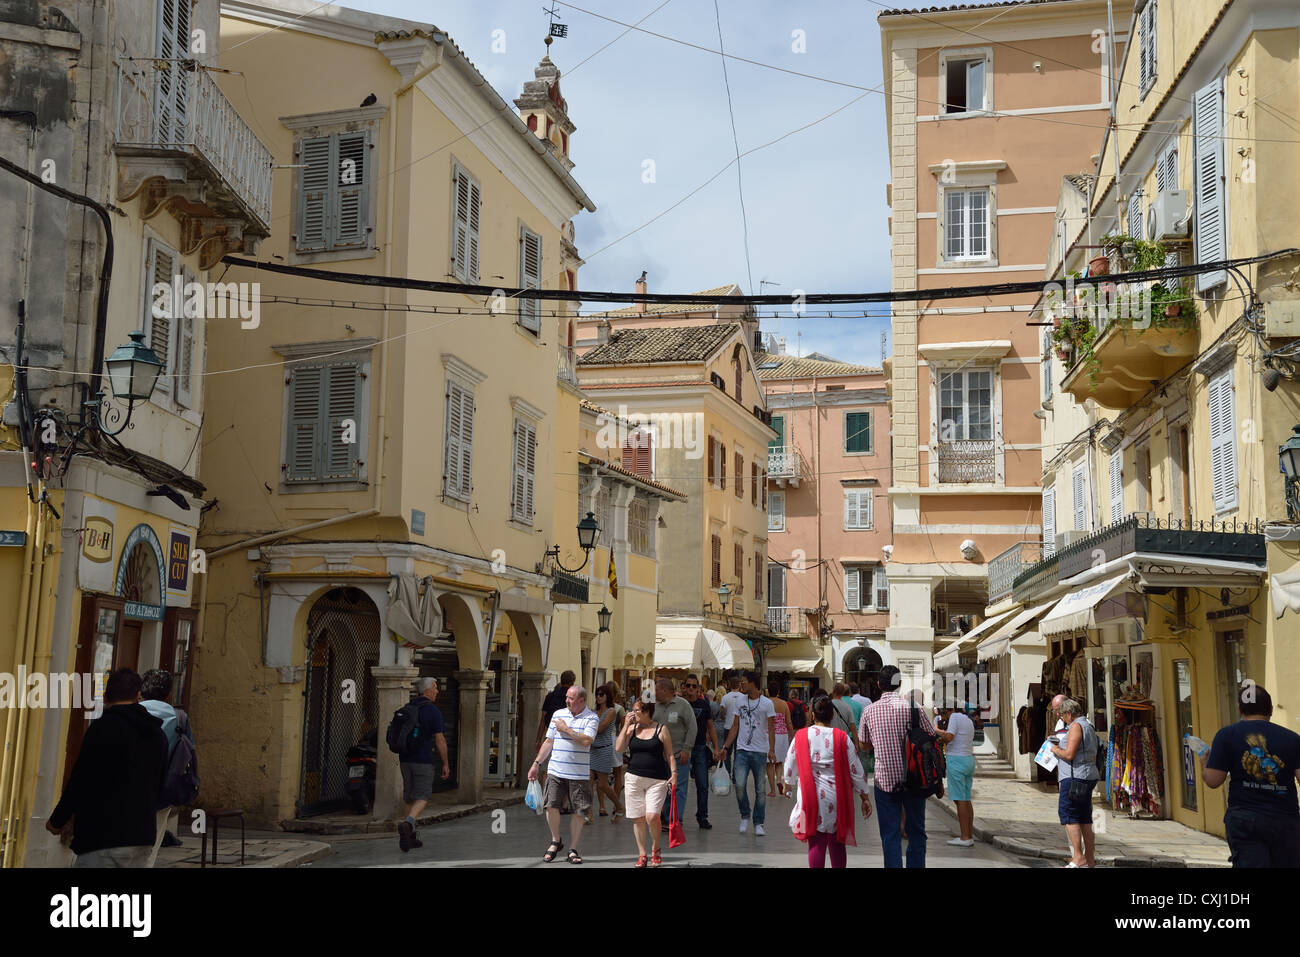 Street scene in Old Corfu Town, Kerkyra, Corfu, Ionian Islands, Greece Stock Photo